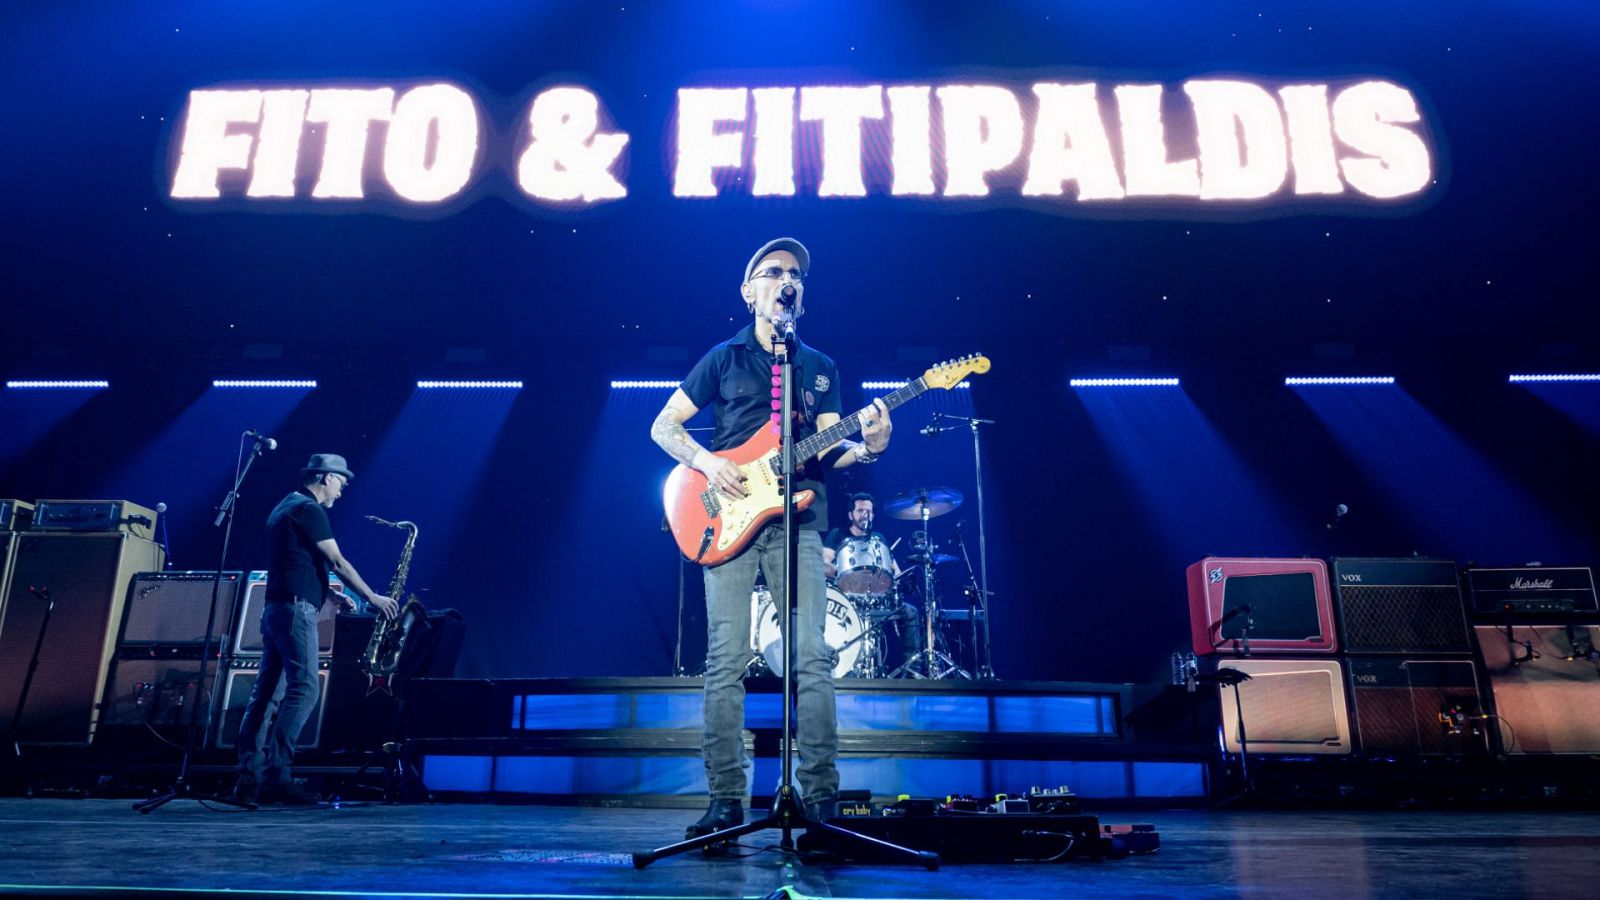 El tour de Fito y Fitipaldis para en Bilbao para un concierto en San Mamés que será retransmitido en directo a nivel nacional